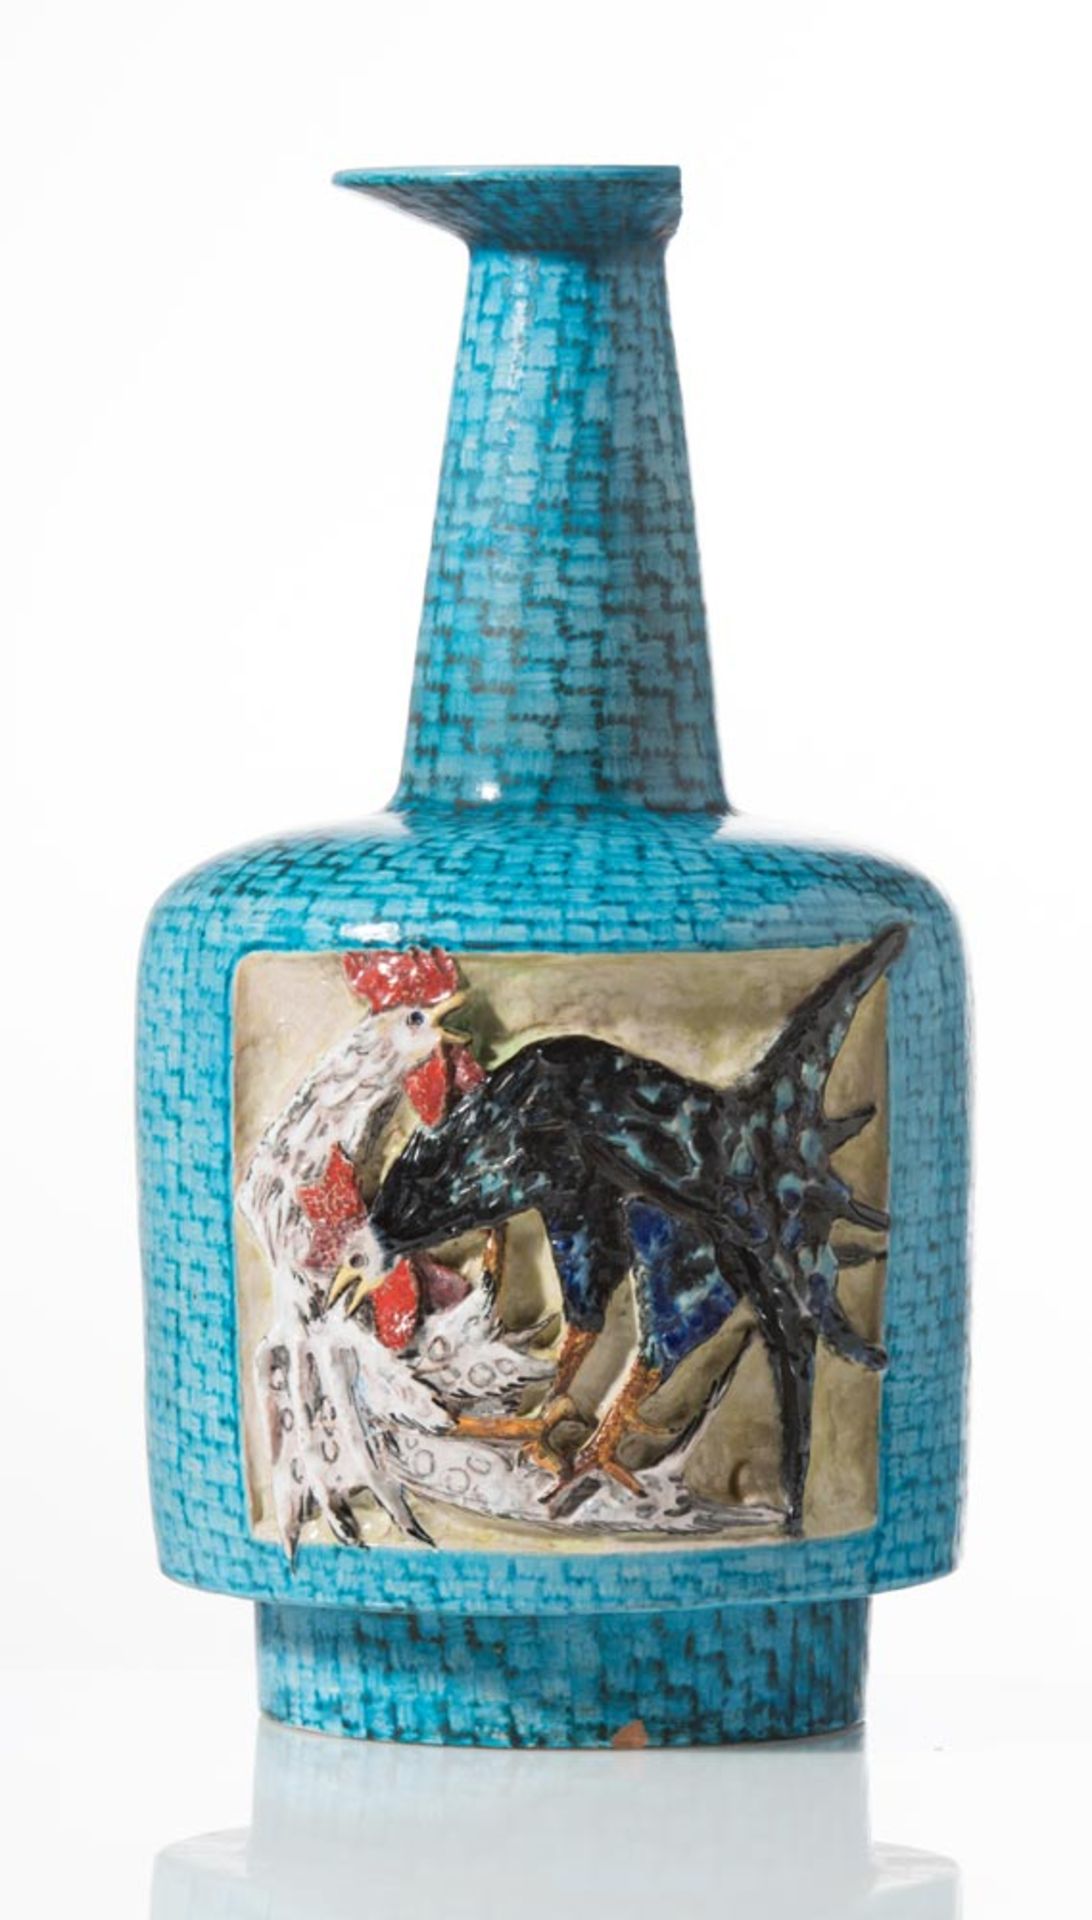 Ceramic vase, Manufacture Minghetti, 1950s, "Combattimento di Galli"